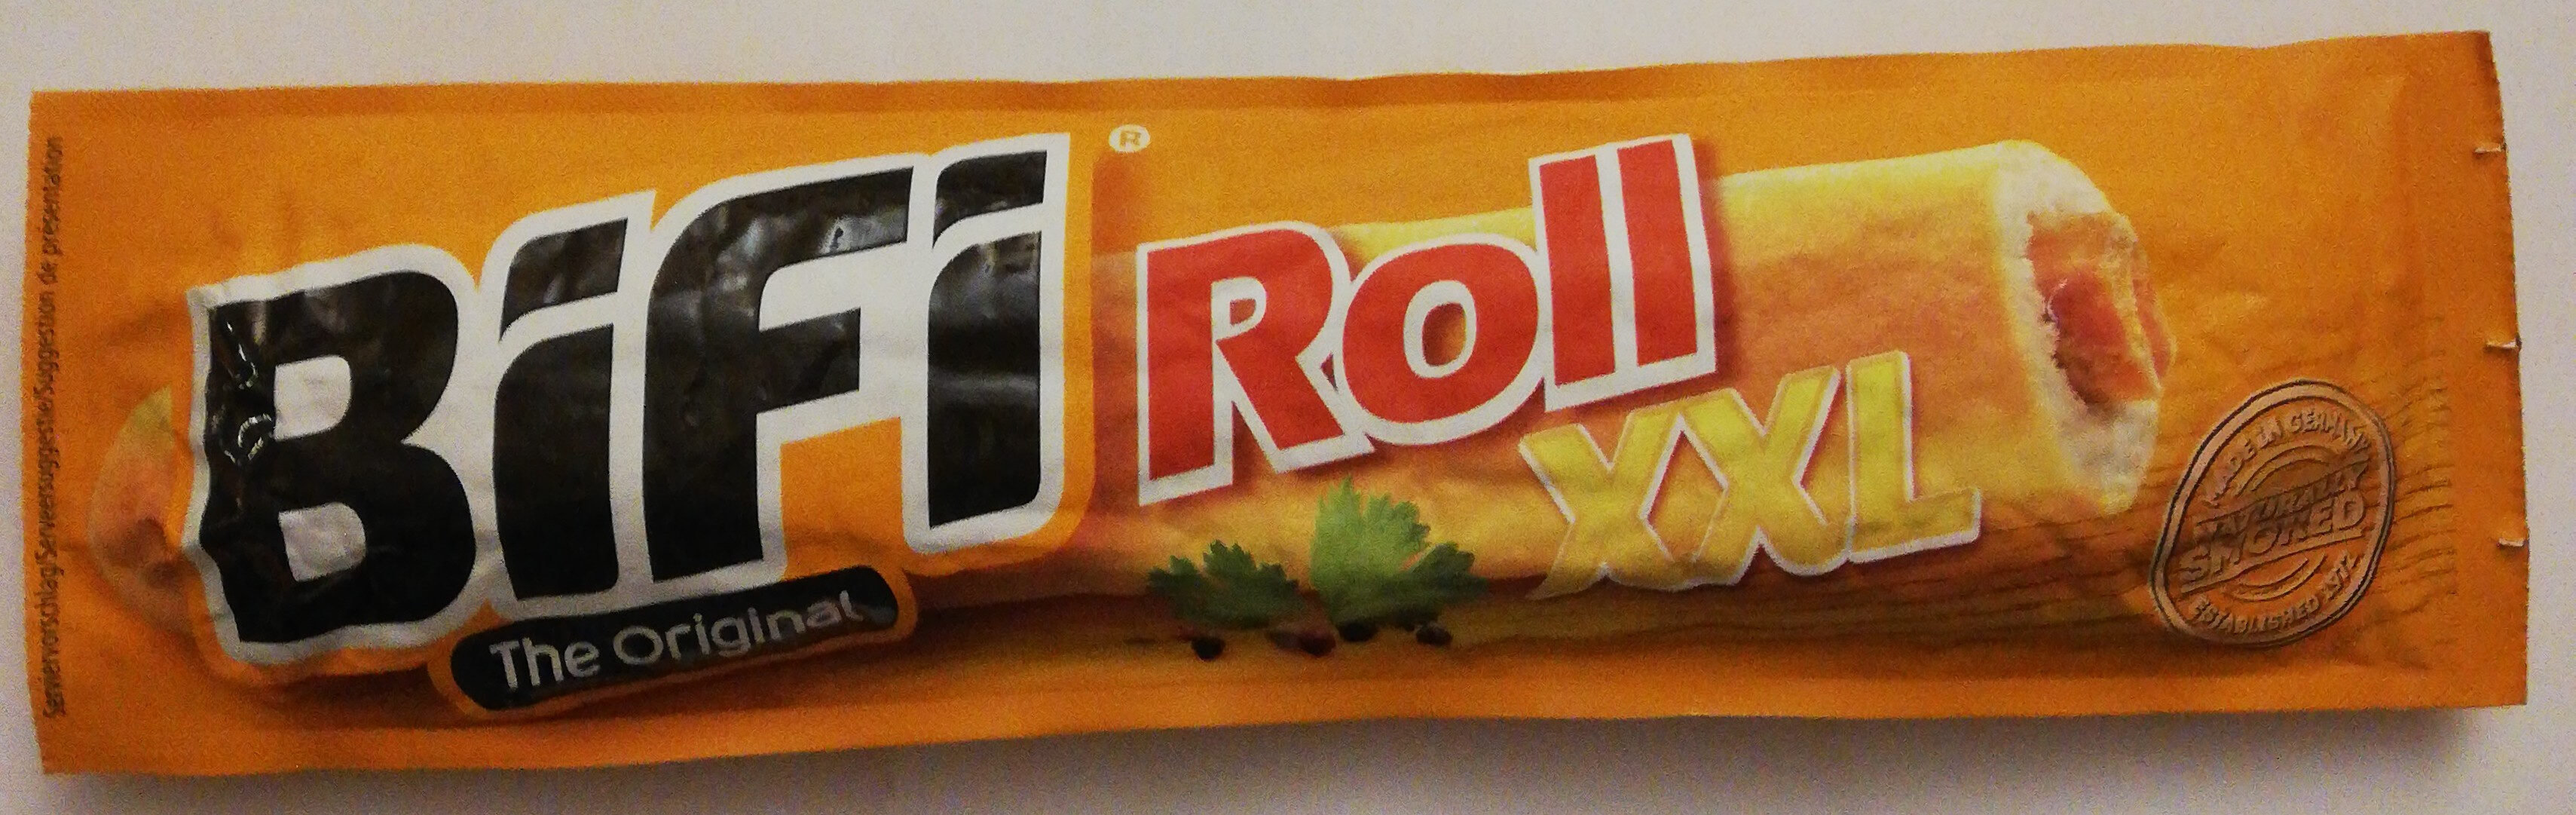 BiFi Roll XXL - Produkt - de